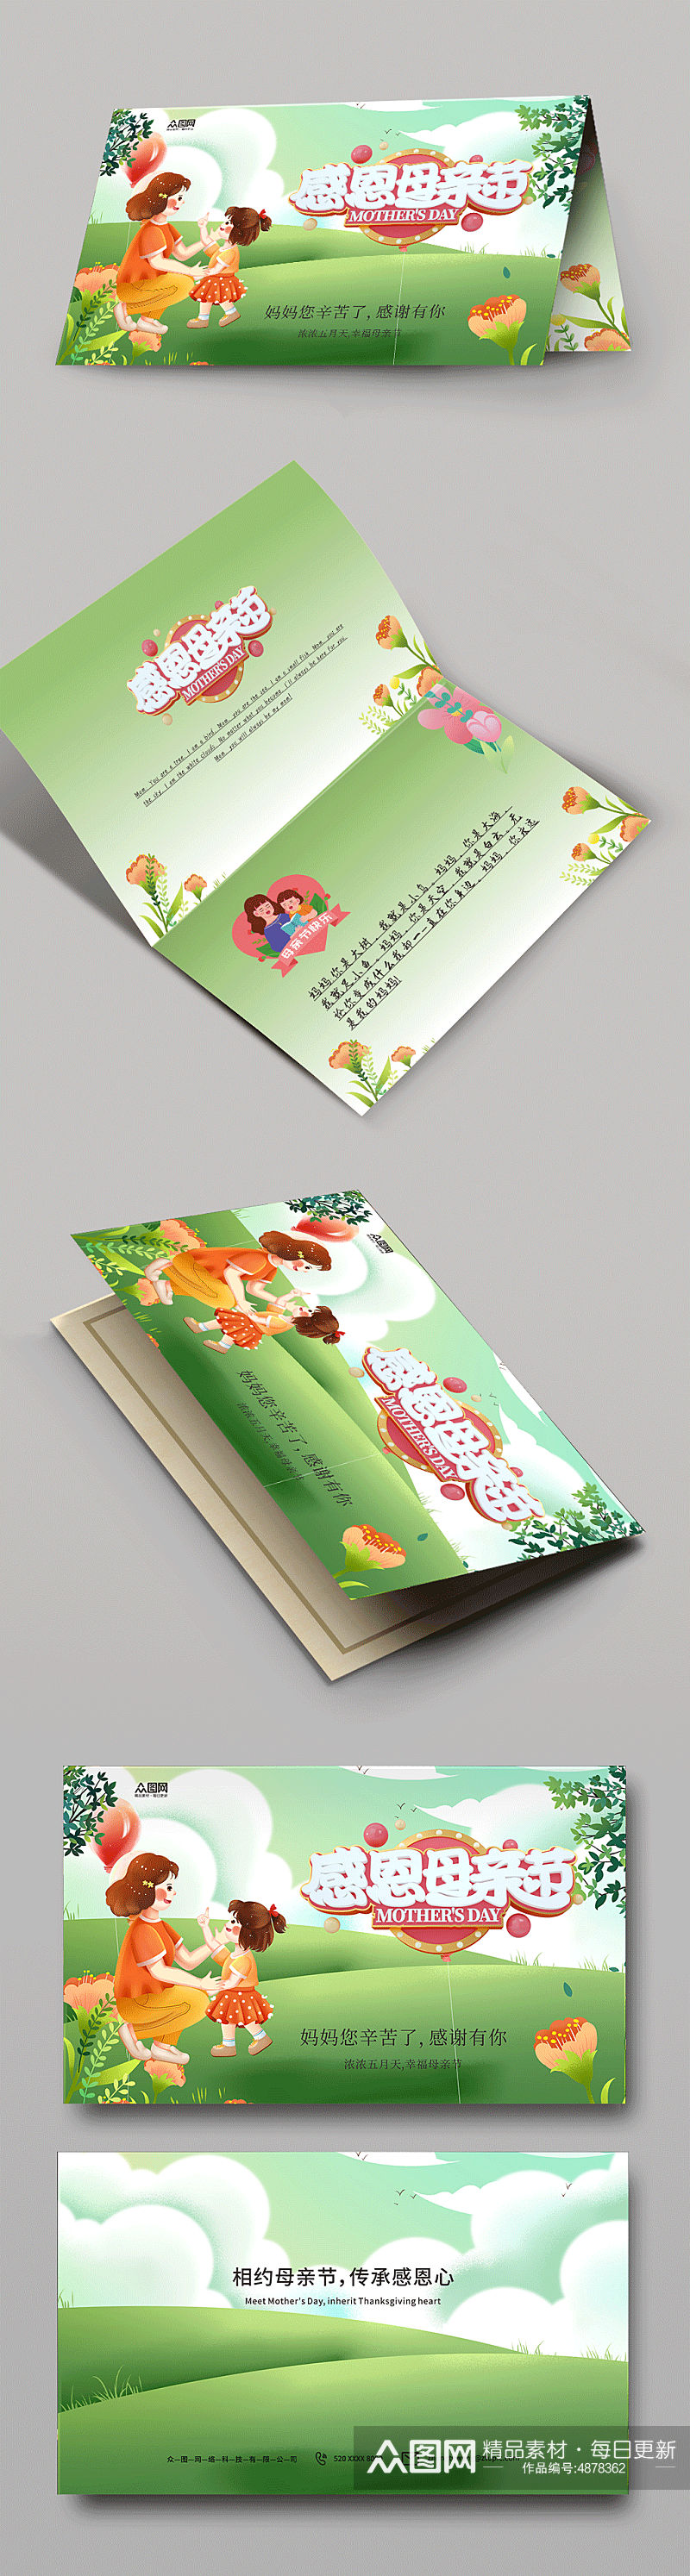 绿色母亲节卡片贺卡设计素材